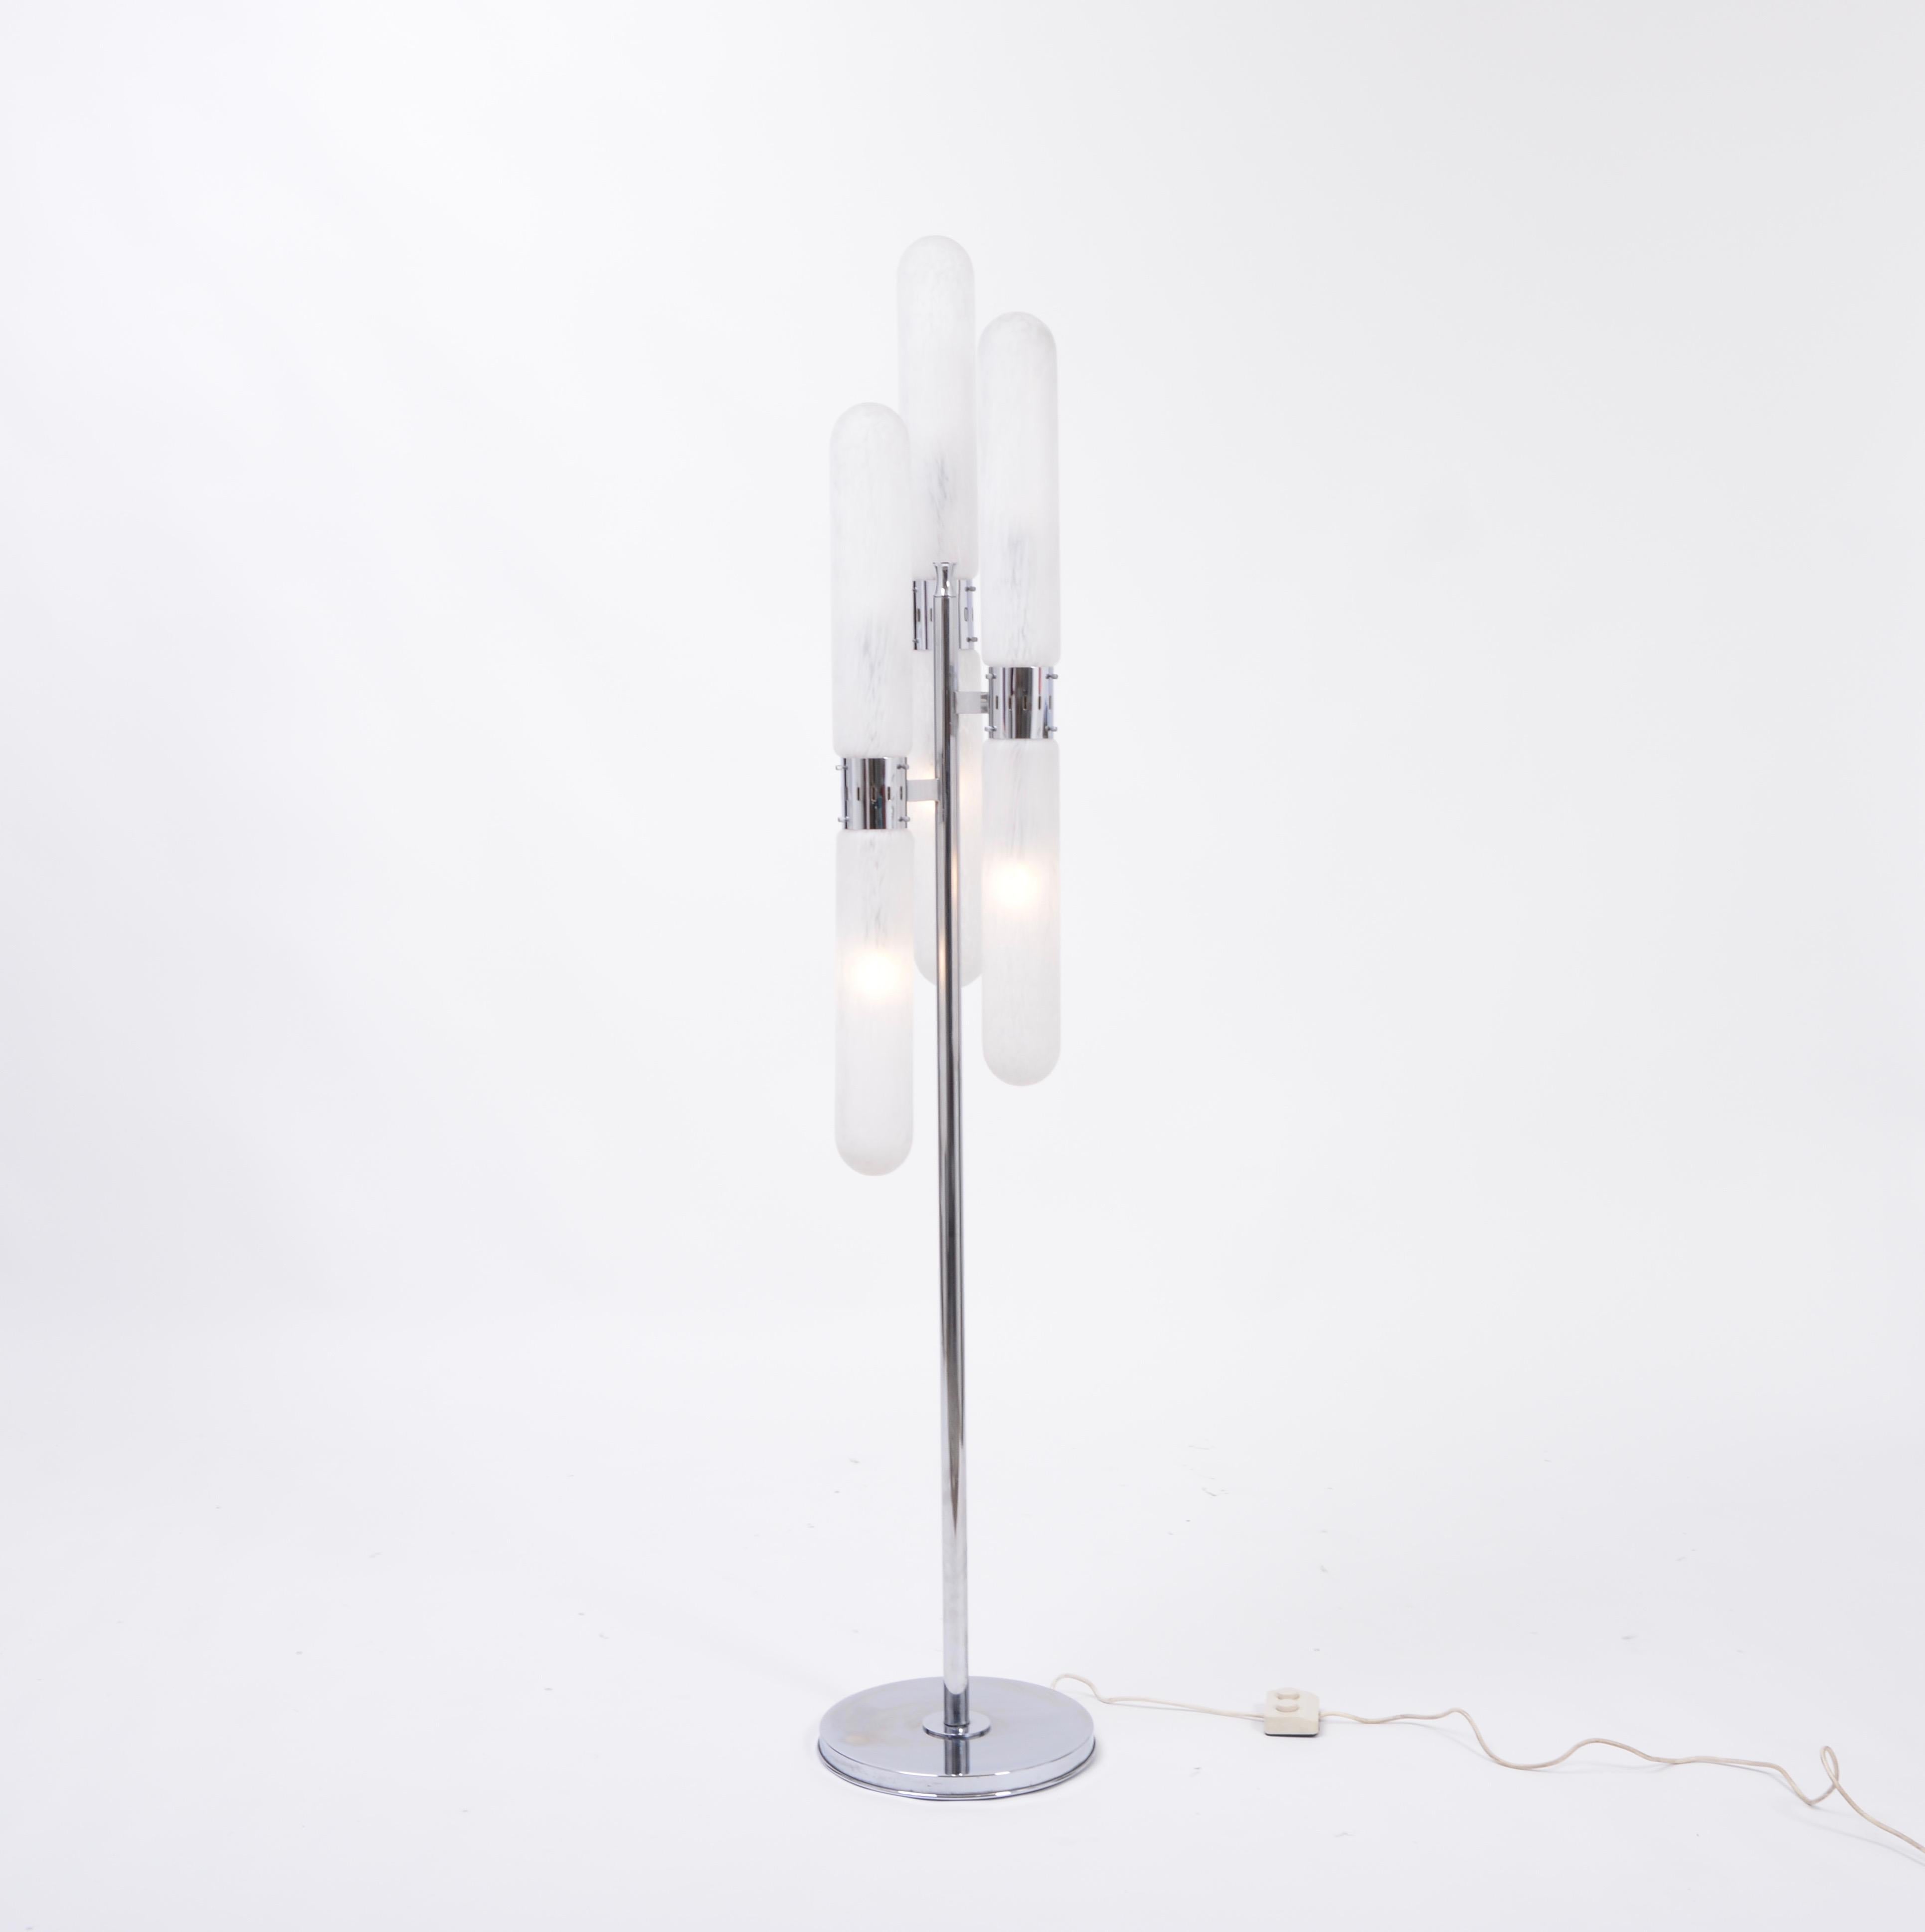 Lampadaire italien vintage sculptural conçu par Aldo Nason et produit par Mazzega dans les années 1960. La lampe comporte 6 lumières réparties en trois cylindres séparés par un collier en acier poli. La lampe est dotée d'un interrupteur permettant